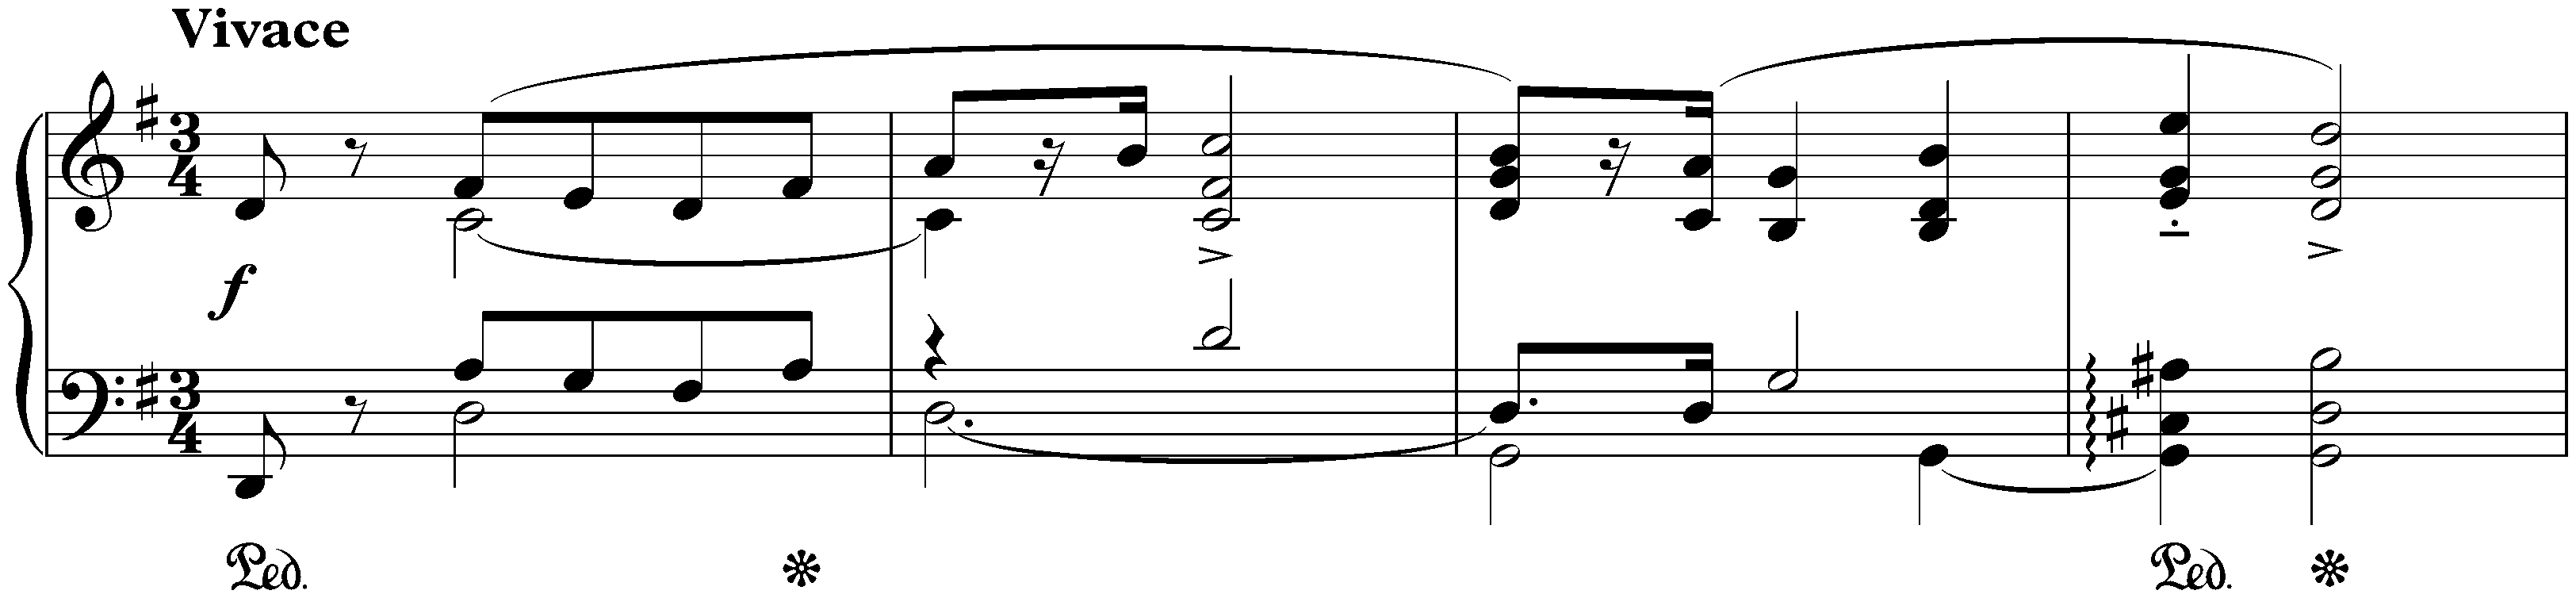 Three Mazurkas, op. 50; 1. G major